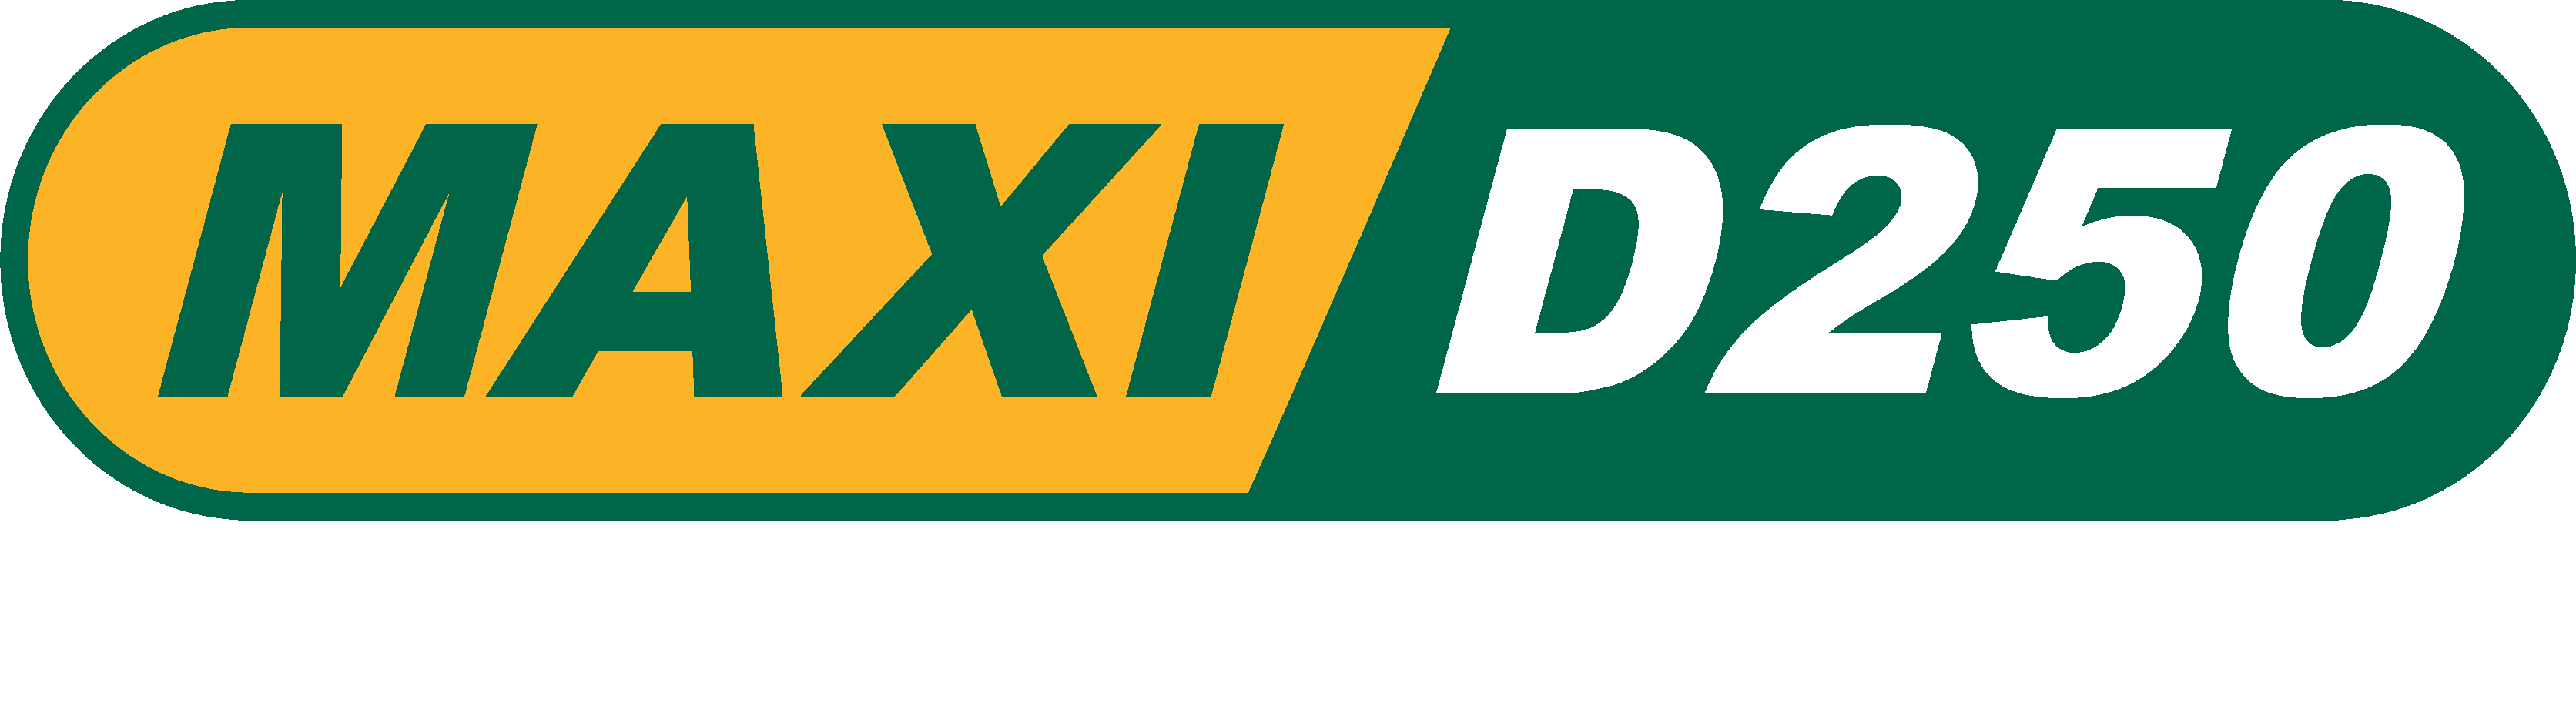 Maxi D250 slogan_white 1